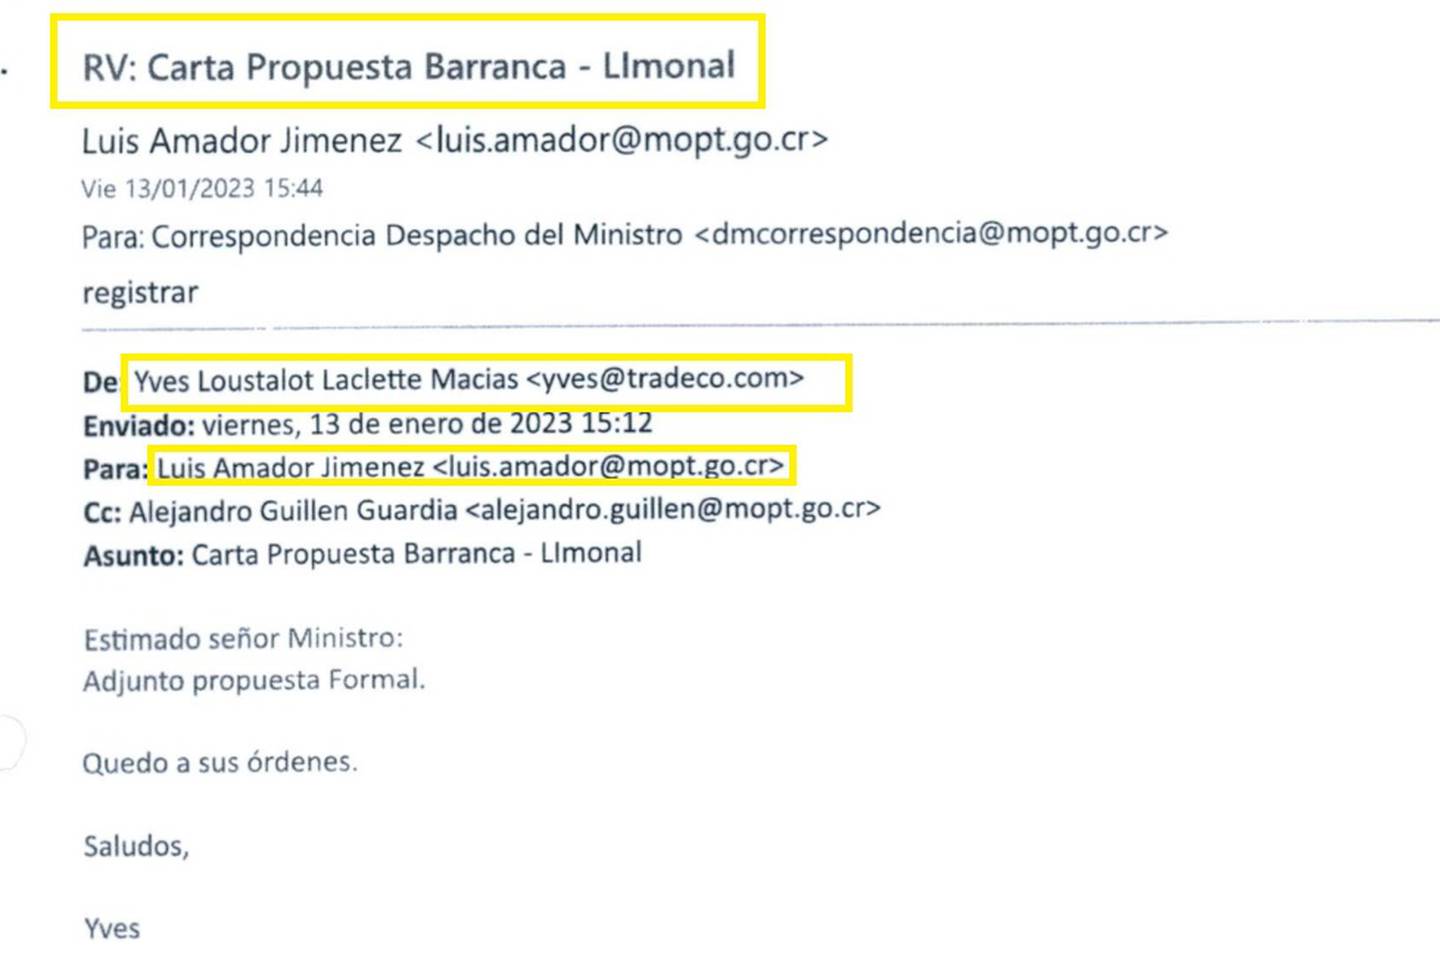 La imagen es una copia del correo recibido por Luis Amador, ministro de Obras Públicas y Transportes, de parte del representante de Tradeco, con la propuesta económica para asumir la ampliación de la vía Barranca-Limonal.